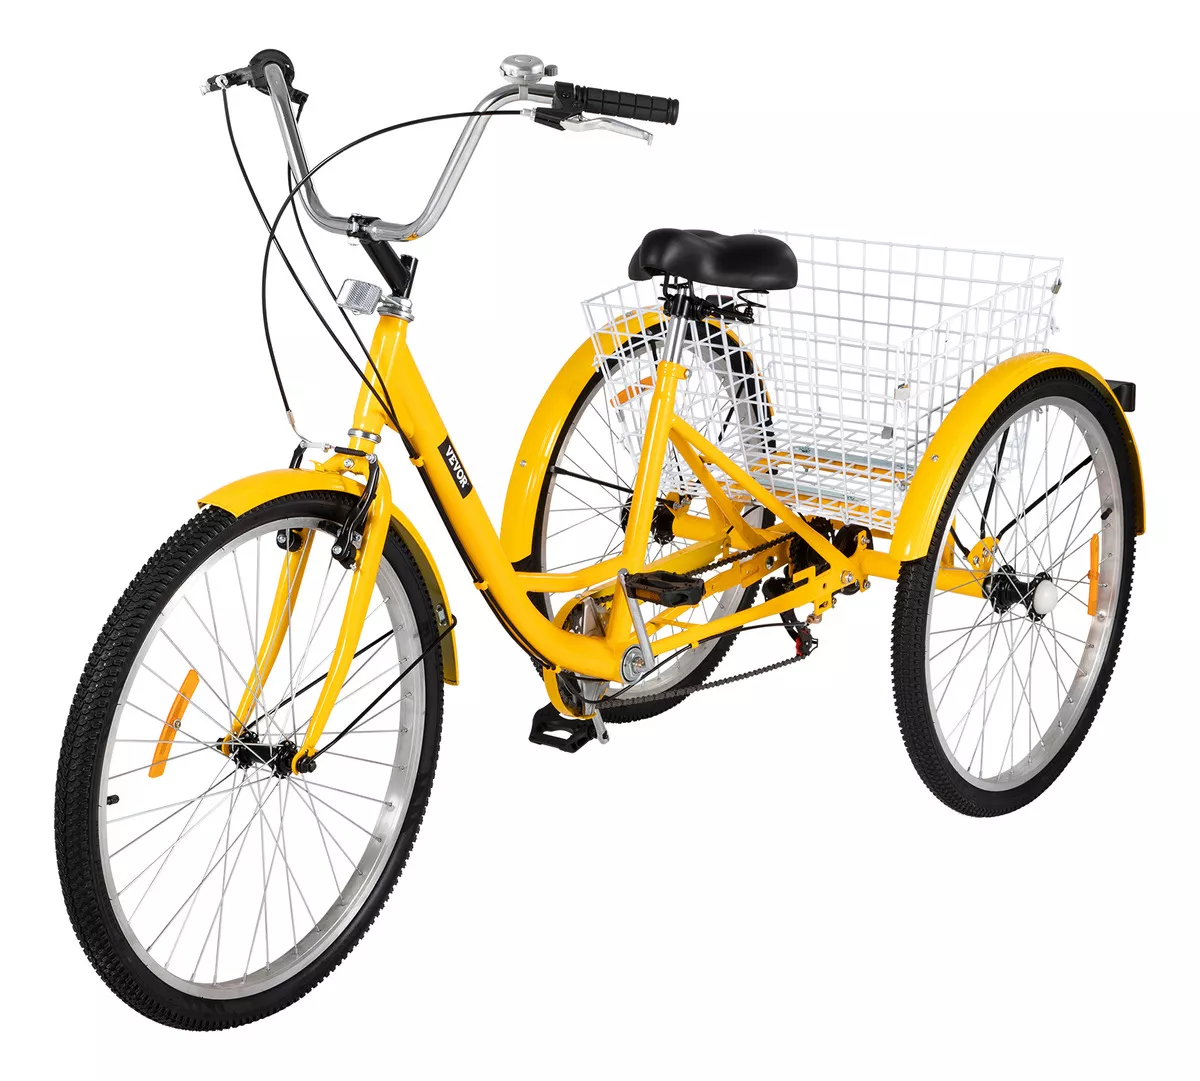 Segunda imagen para búsqueda de triciclos para adultos